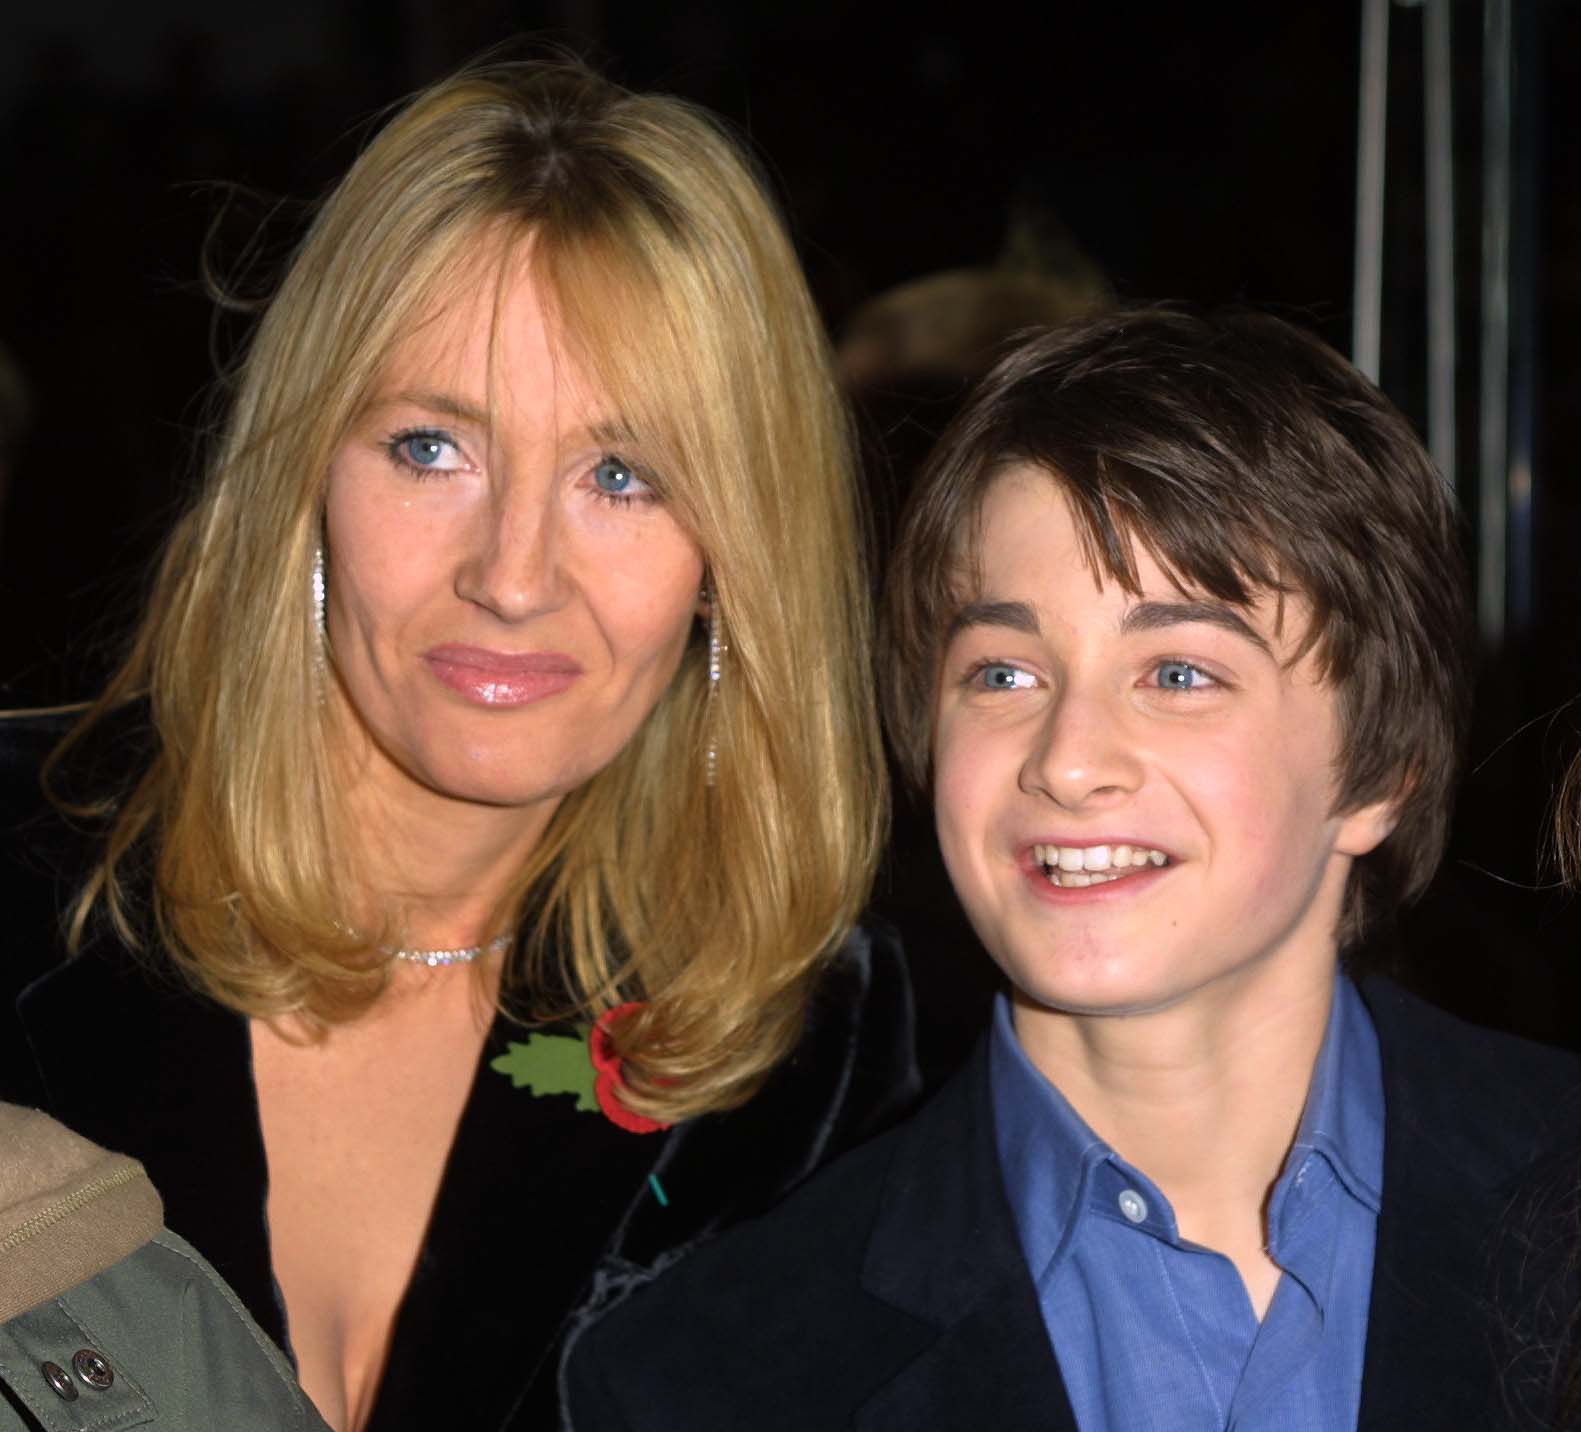 J.K. Rowling und Daniel Radcliffe bei der Harry Potter Premiere 2001